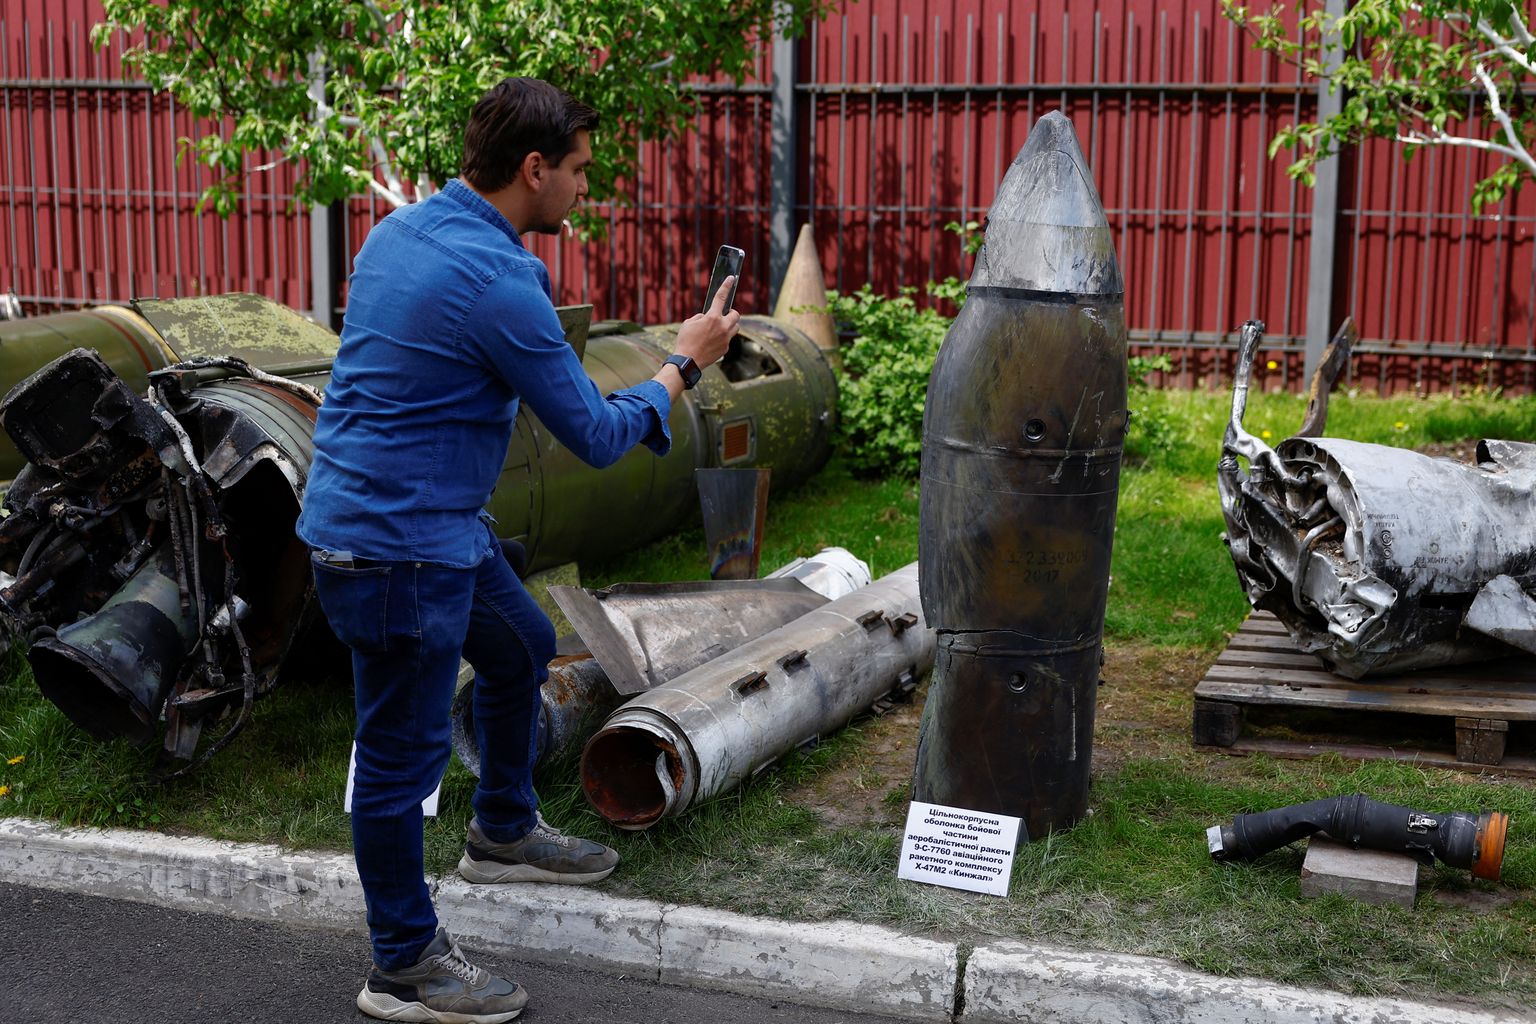 Notriektā Kinžal raķete Kijivā, Ukrainā